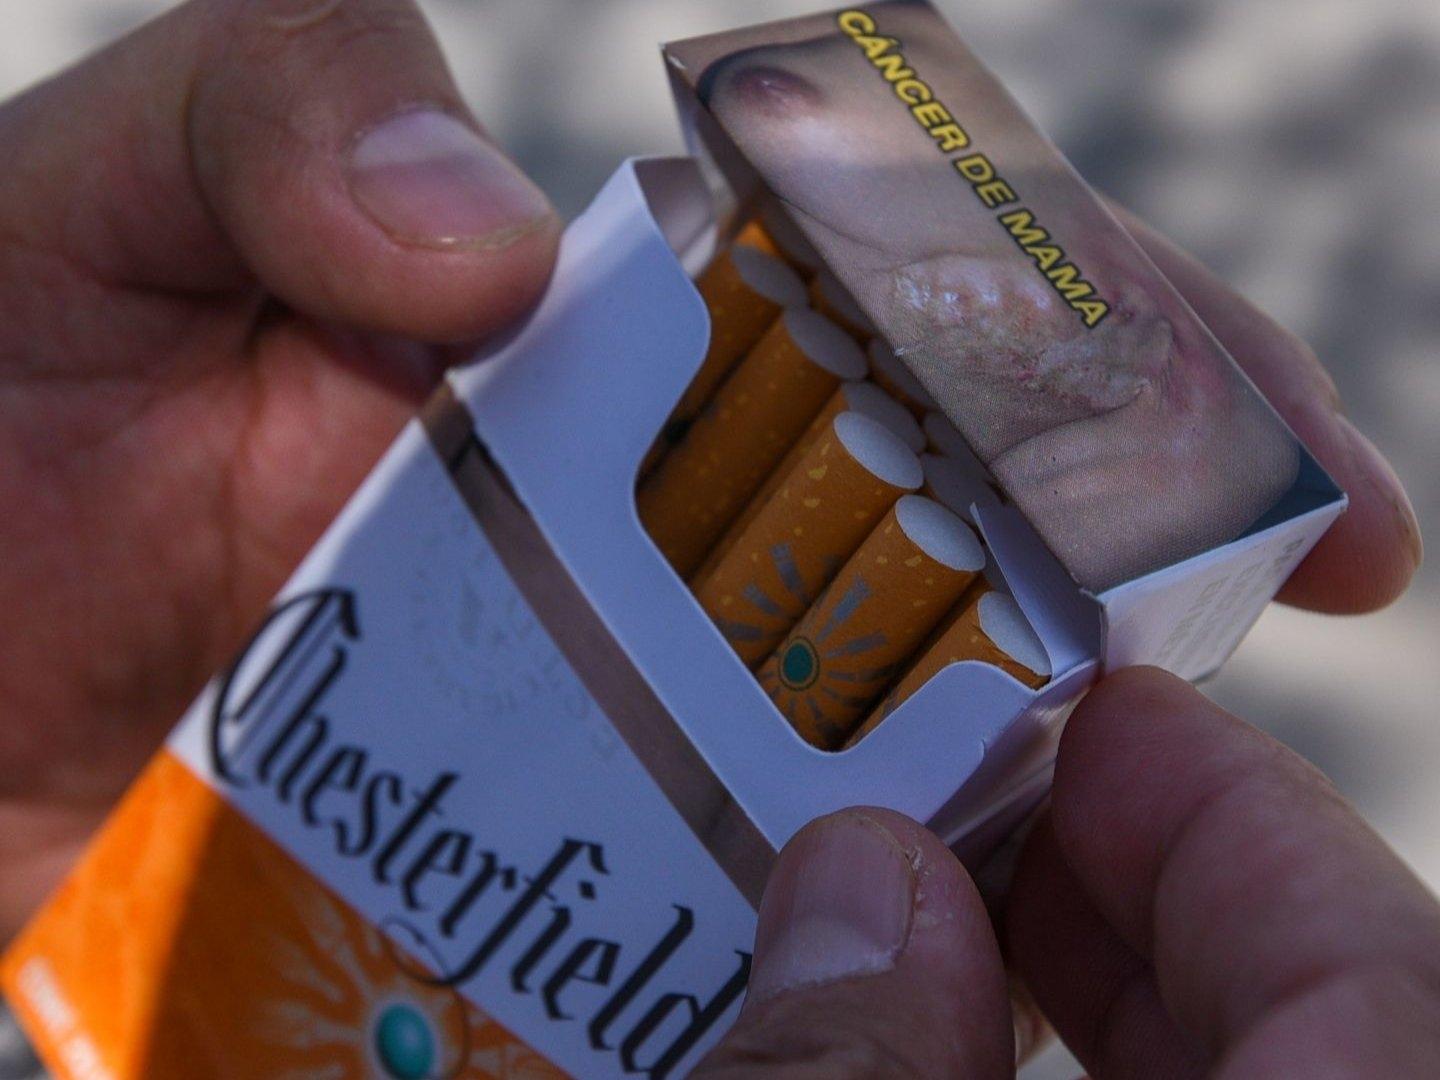 Cajetillas de Cigarros en México Tendrán Nuevas Leyendas sobre Riesgos a la Salud